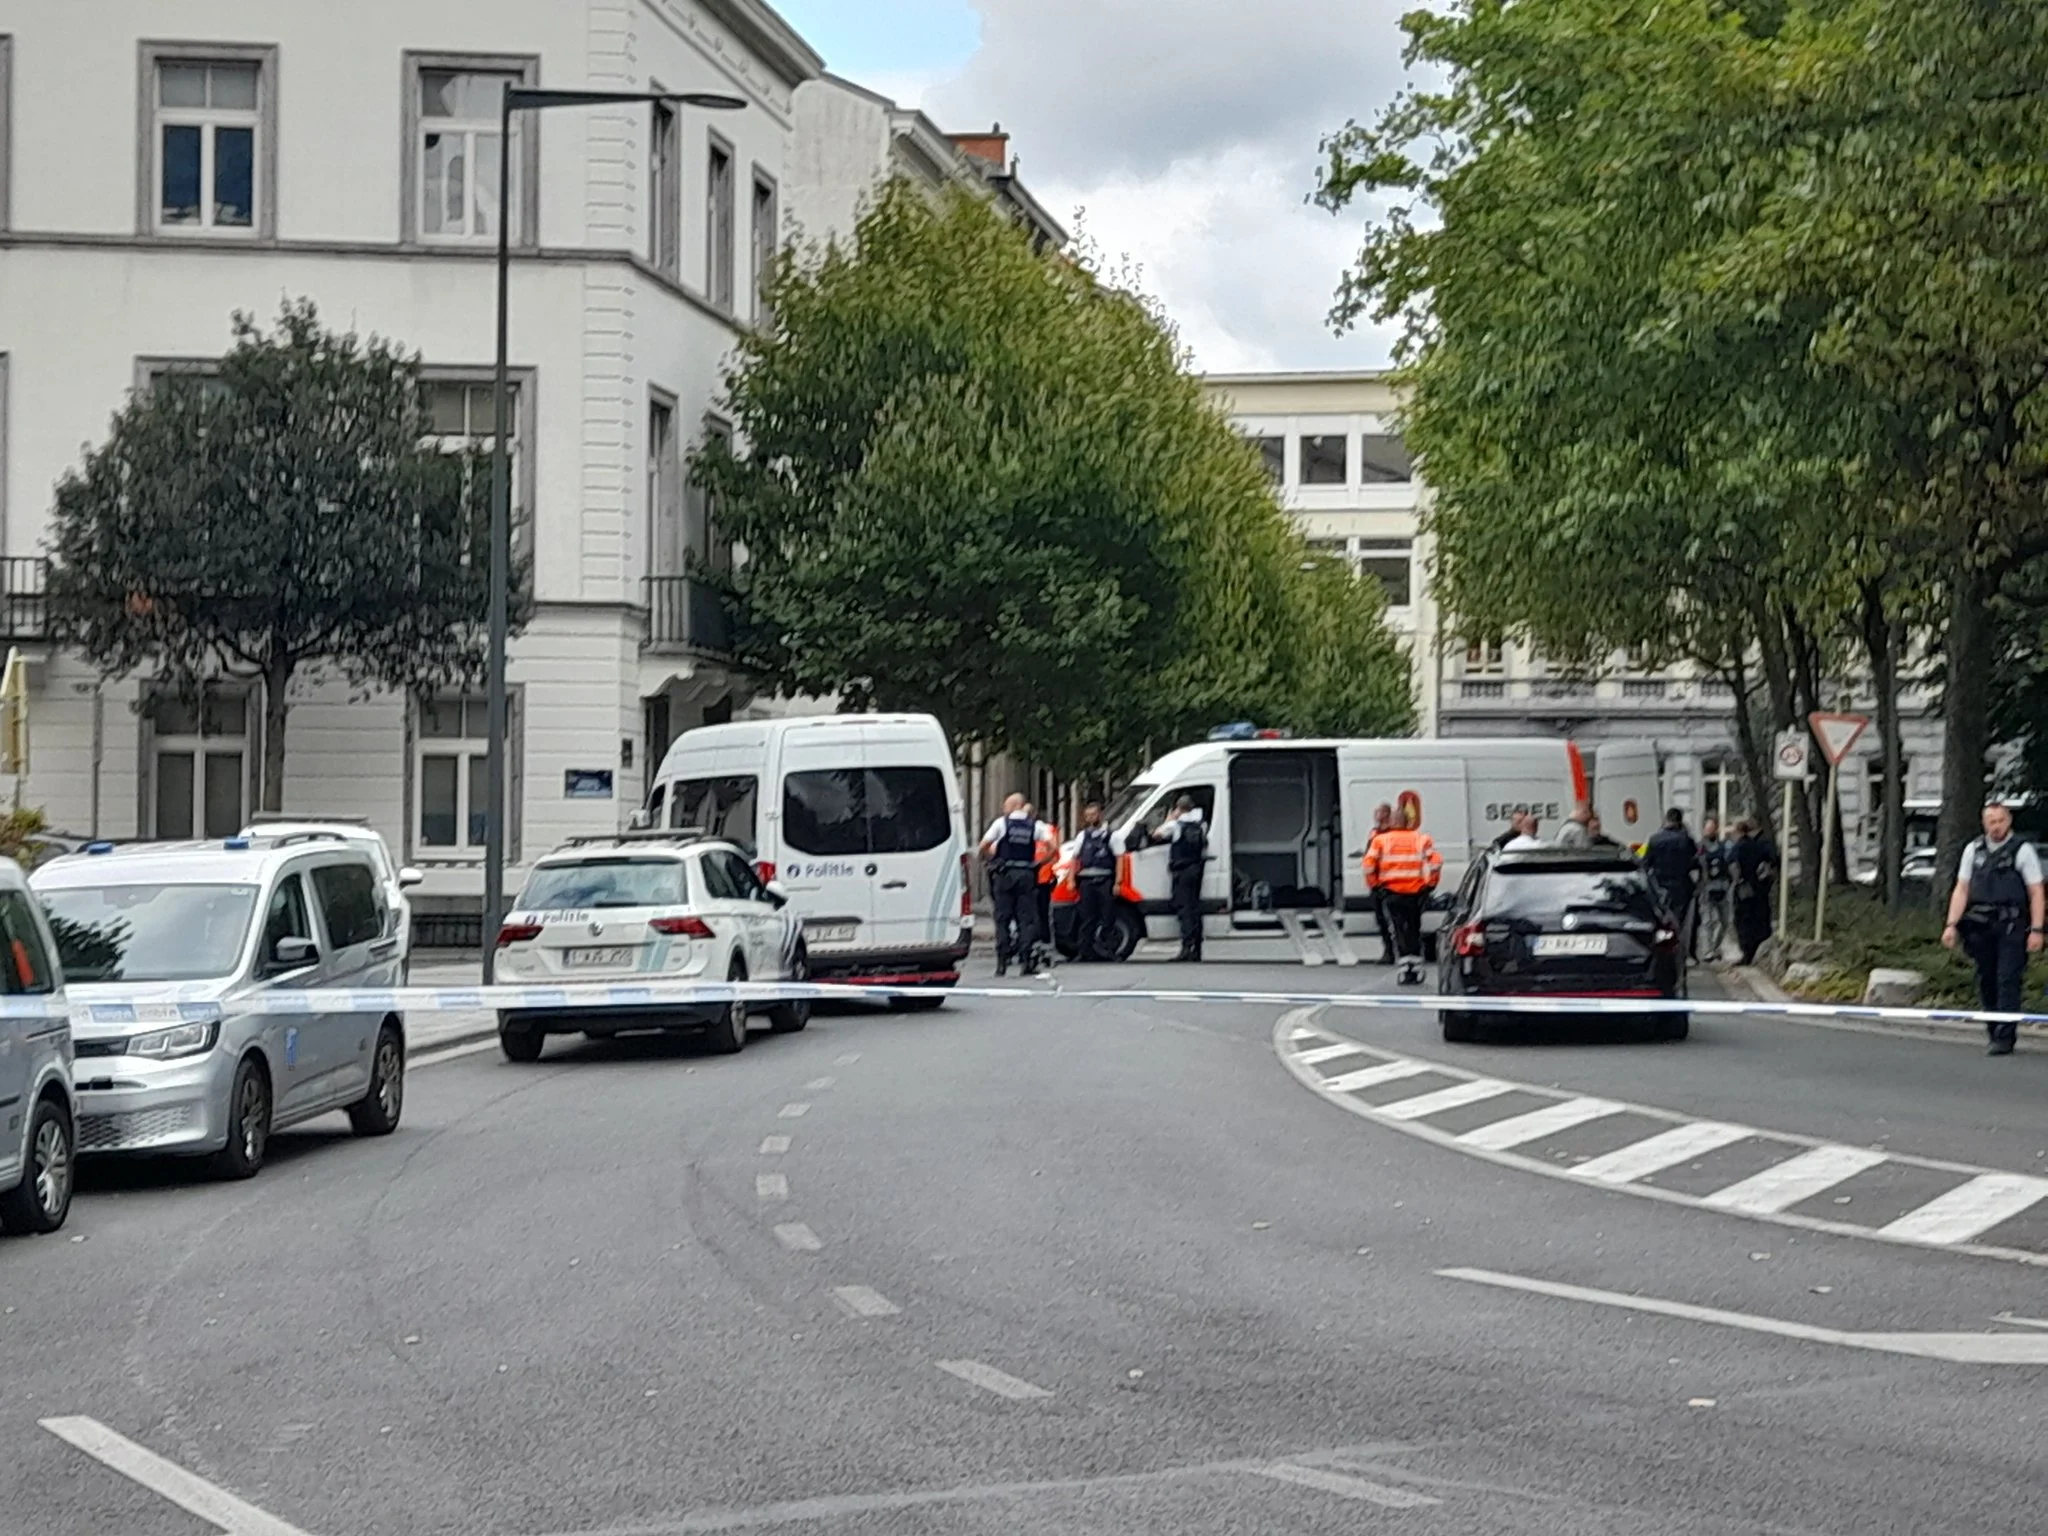 Συνελήφθη ο οδηγός του βαν που έπεσε σε καφετέρια στις Βρυξέλλες